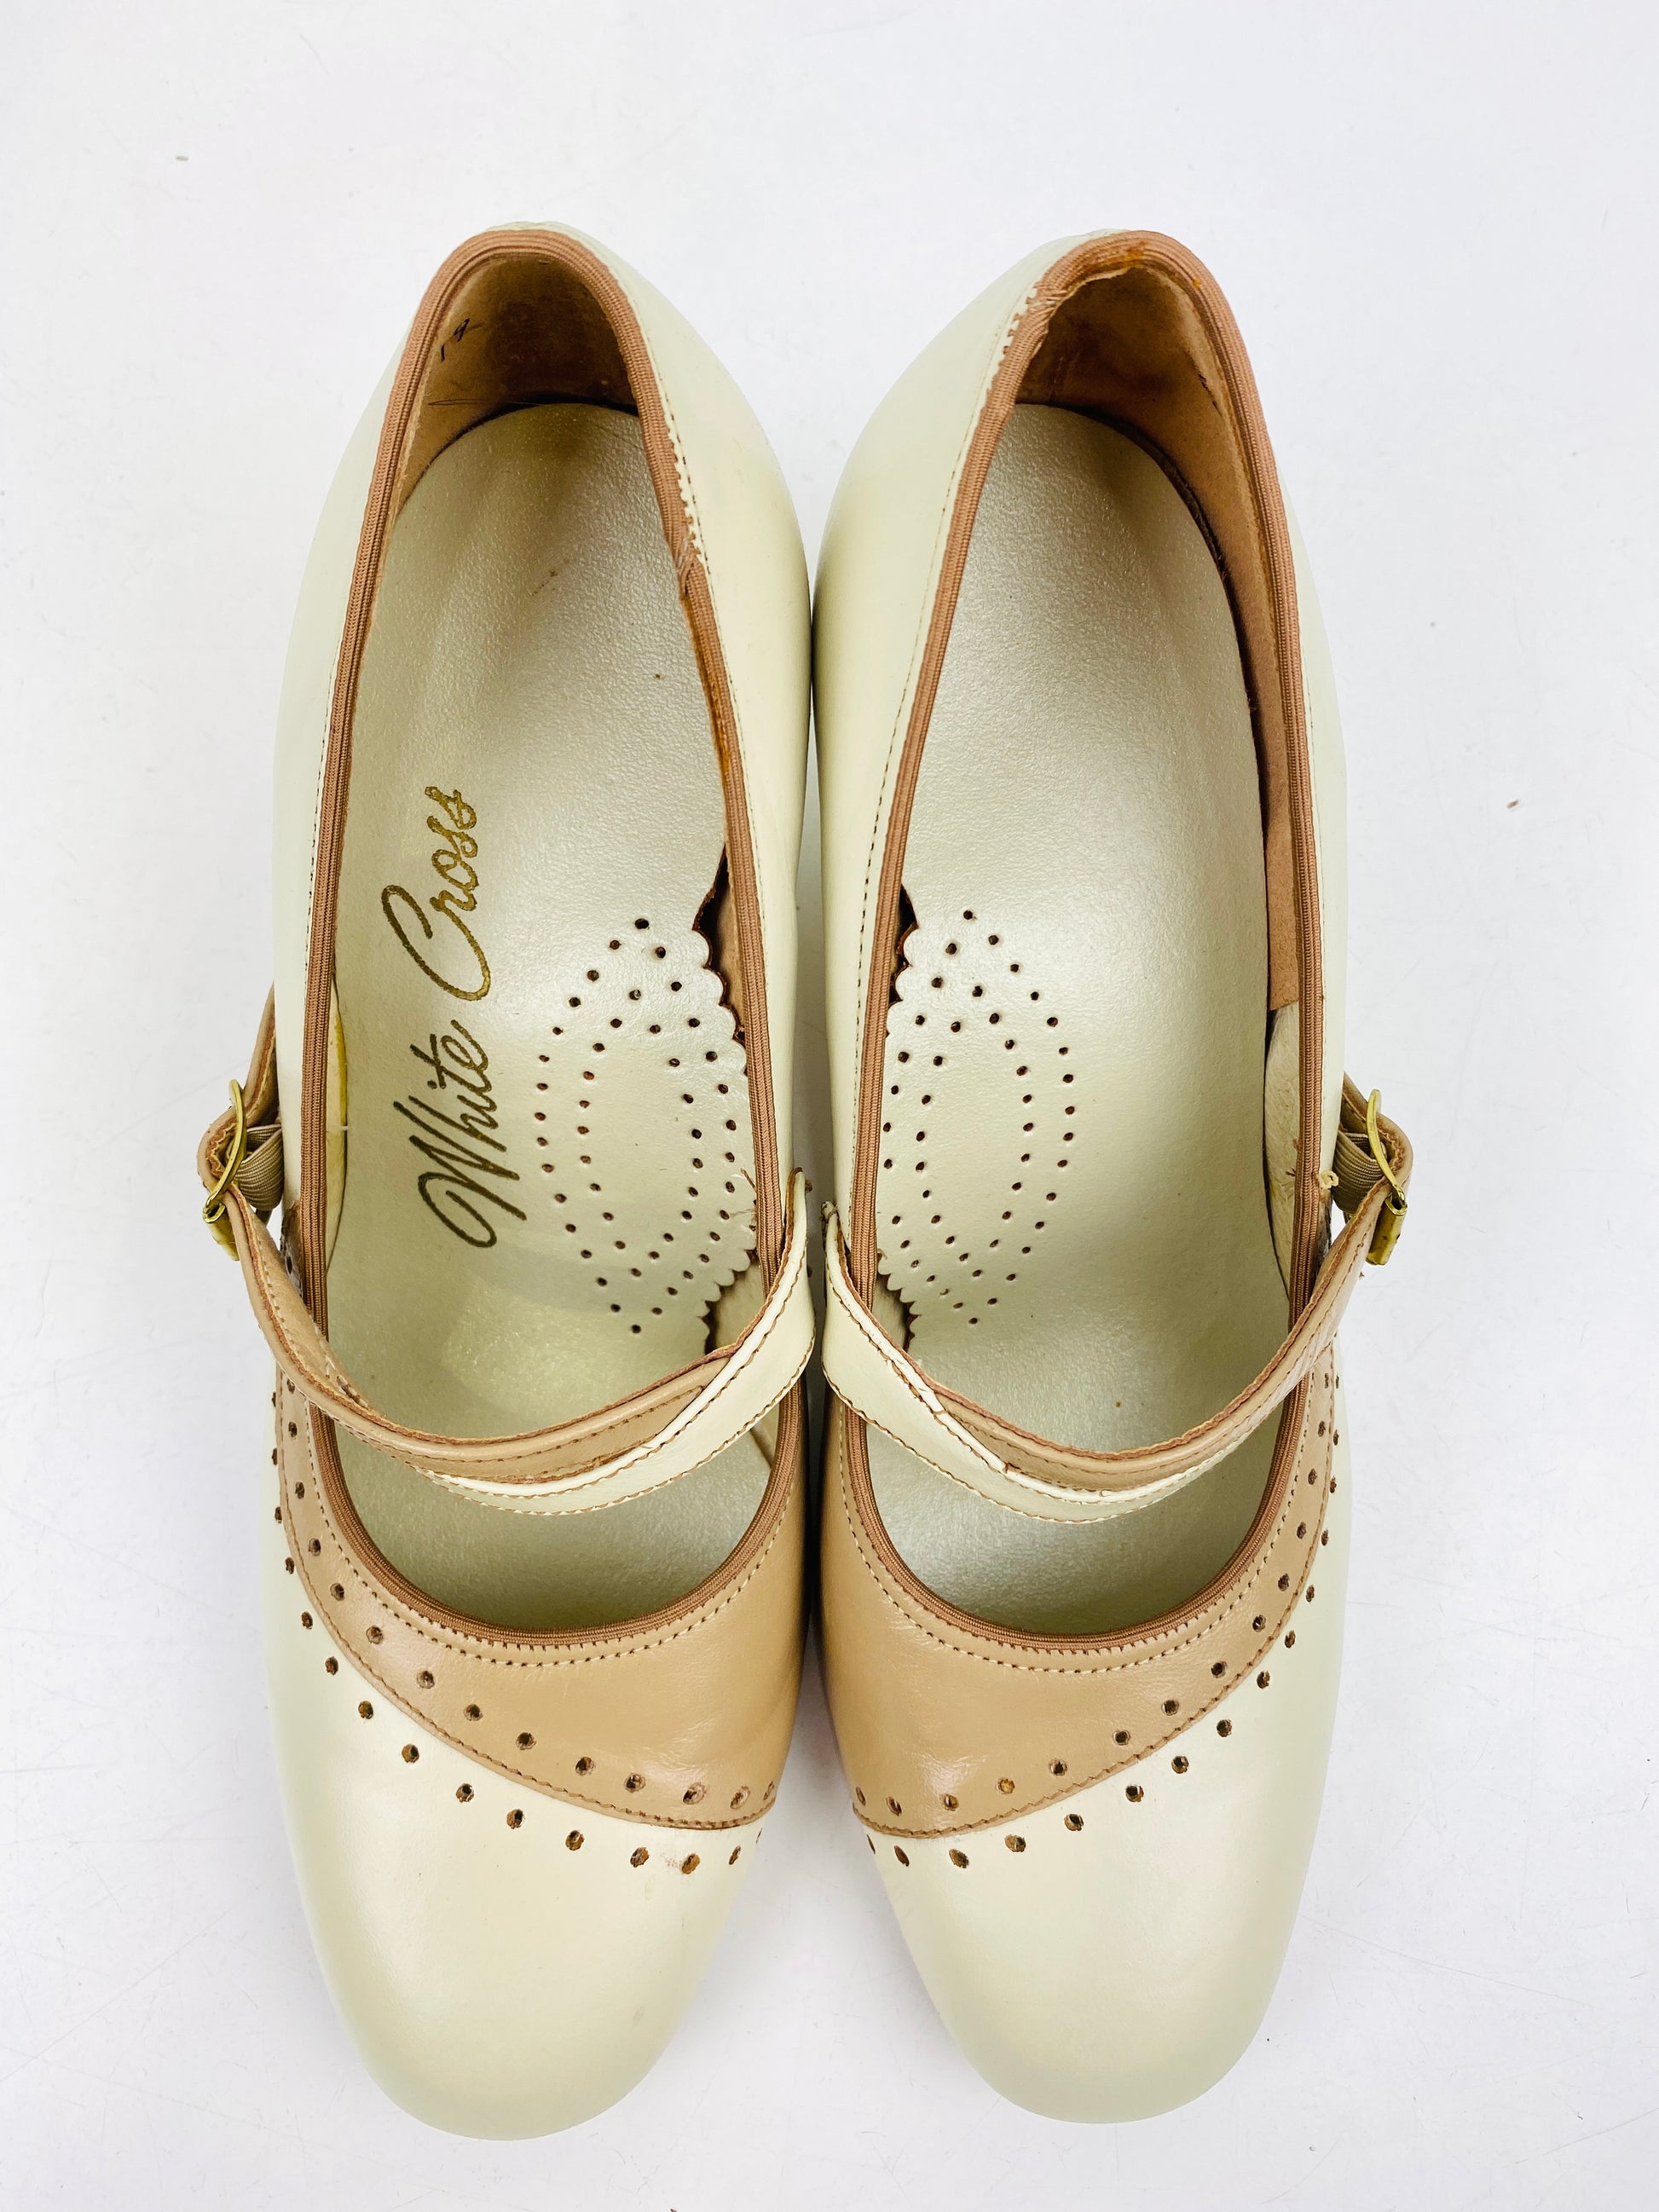 Vintage Deadstock Shoes, Women's 1980s Beige Leather Mid-Heel Pump's, NOS